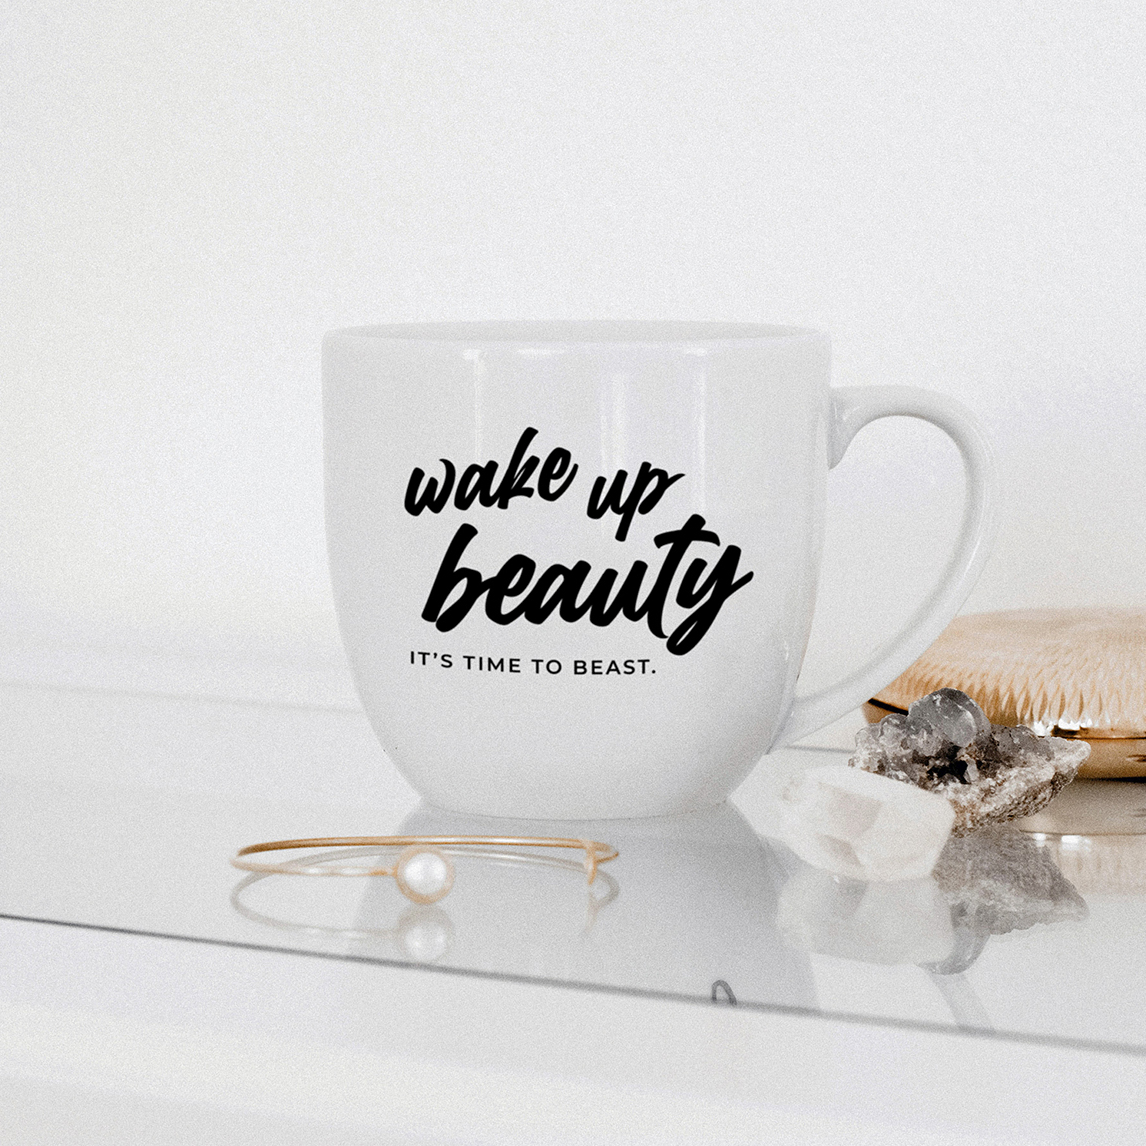 Wake up Beauty, it's time to Beast Coffee Mug